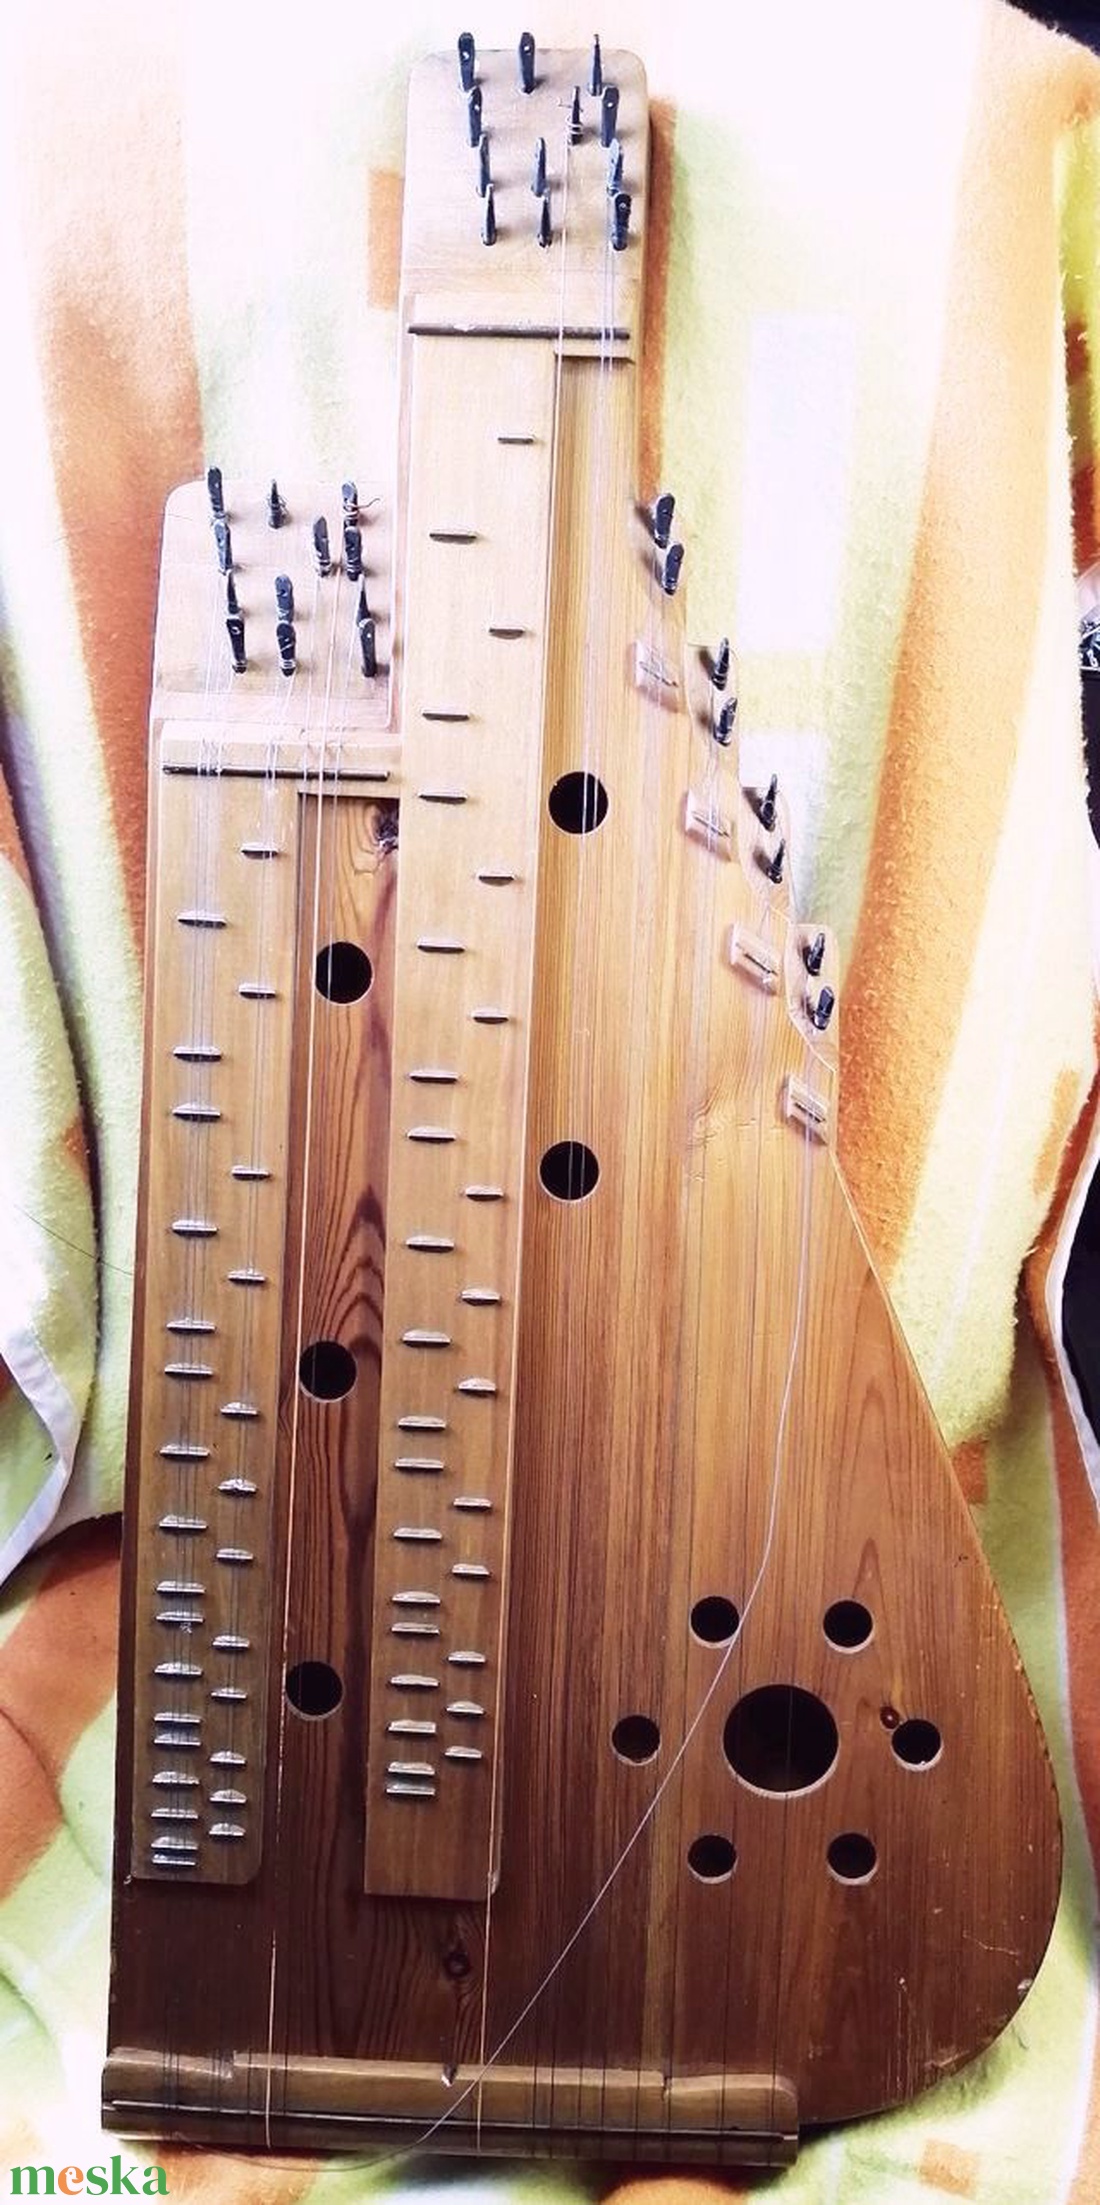 Népművészetii hangszer. Kézműves hasas citera, Kerédi Menyhért 1989 - könyv & zene - hangszer & hangszertok - Meska.hu